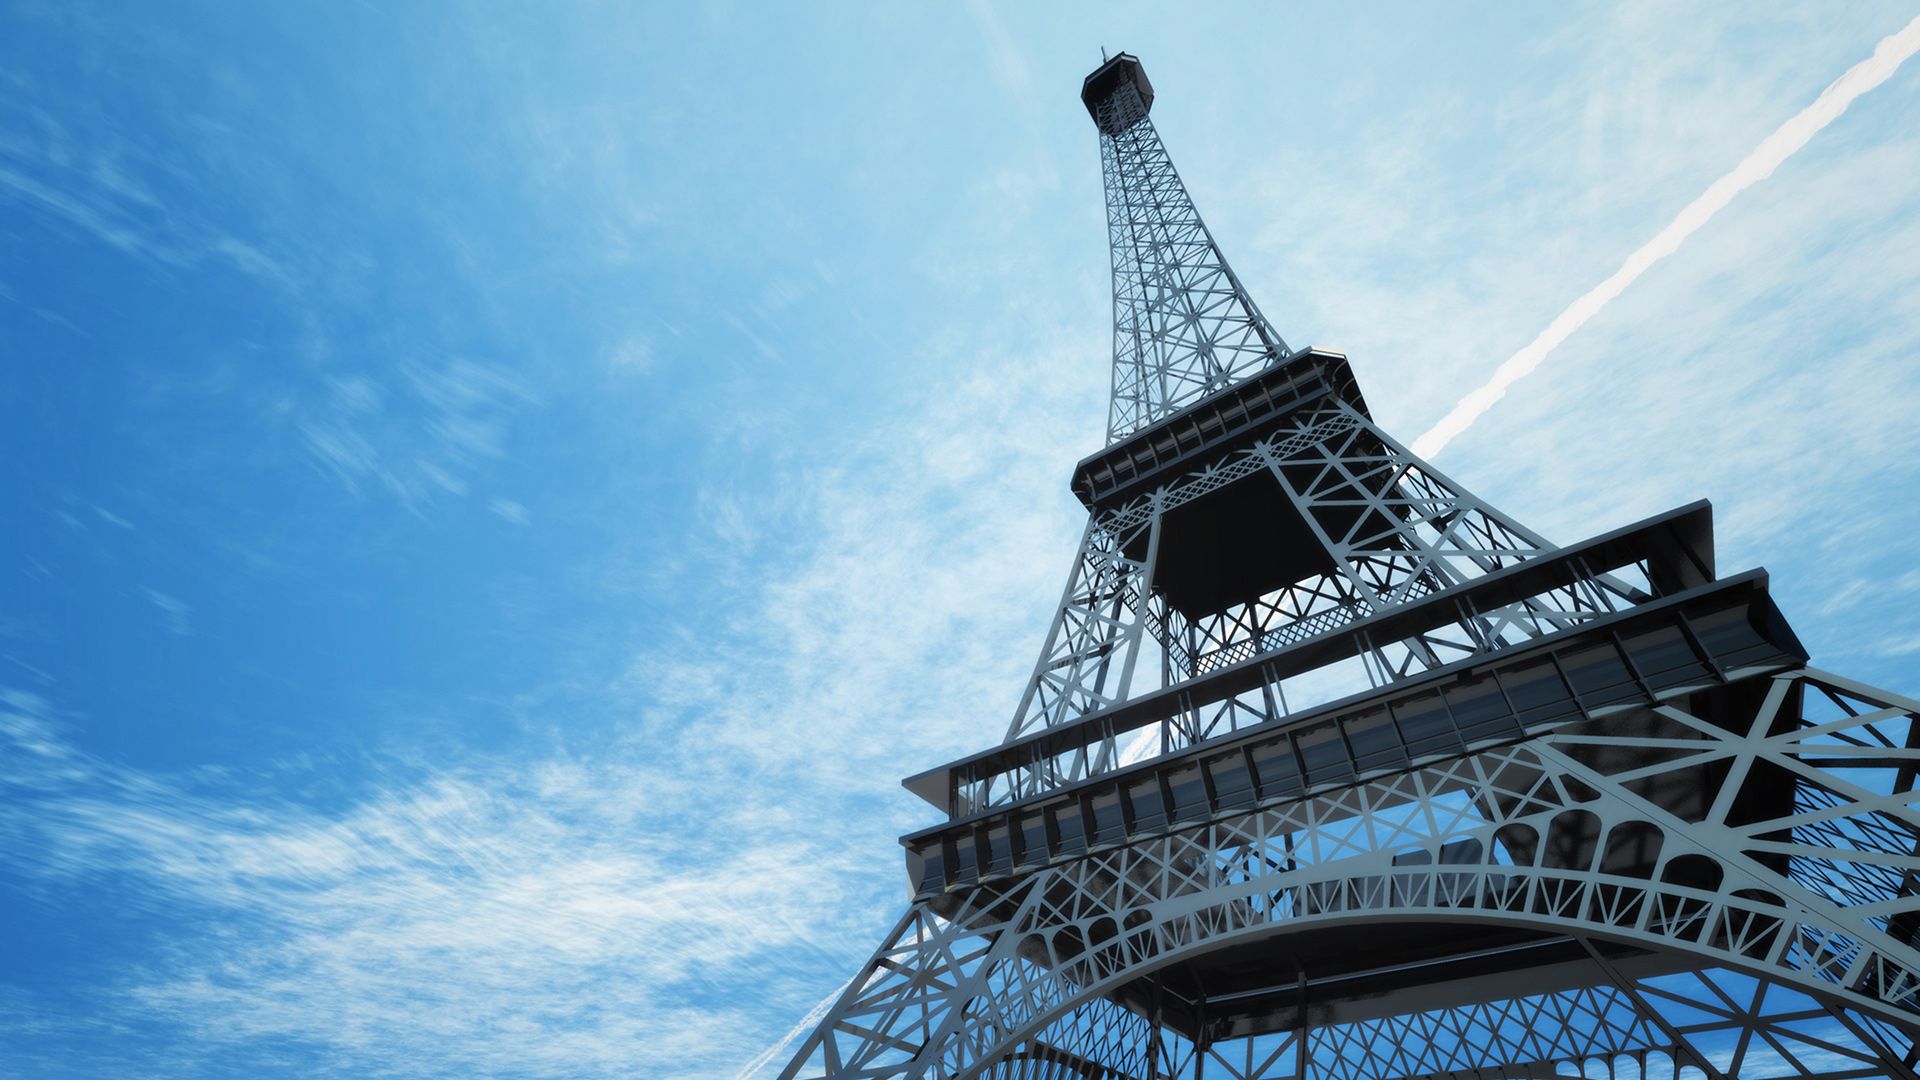 Fondos de la Torre Eiffel 09 - [1920 x 1080]